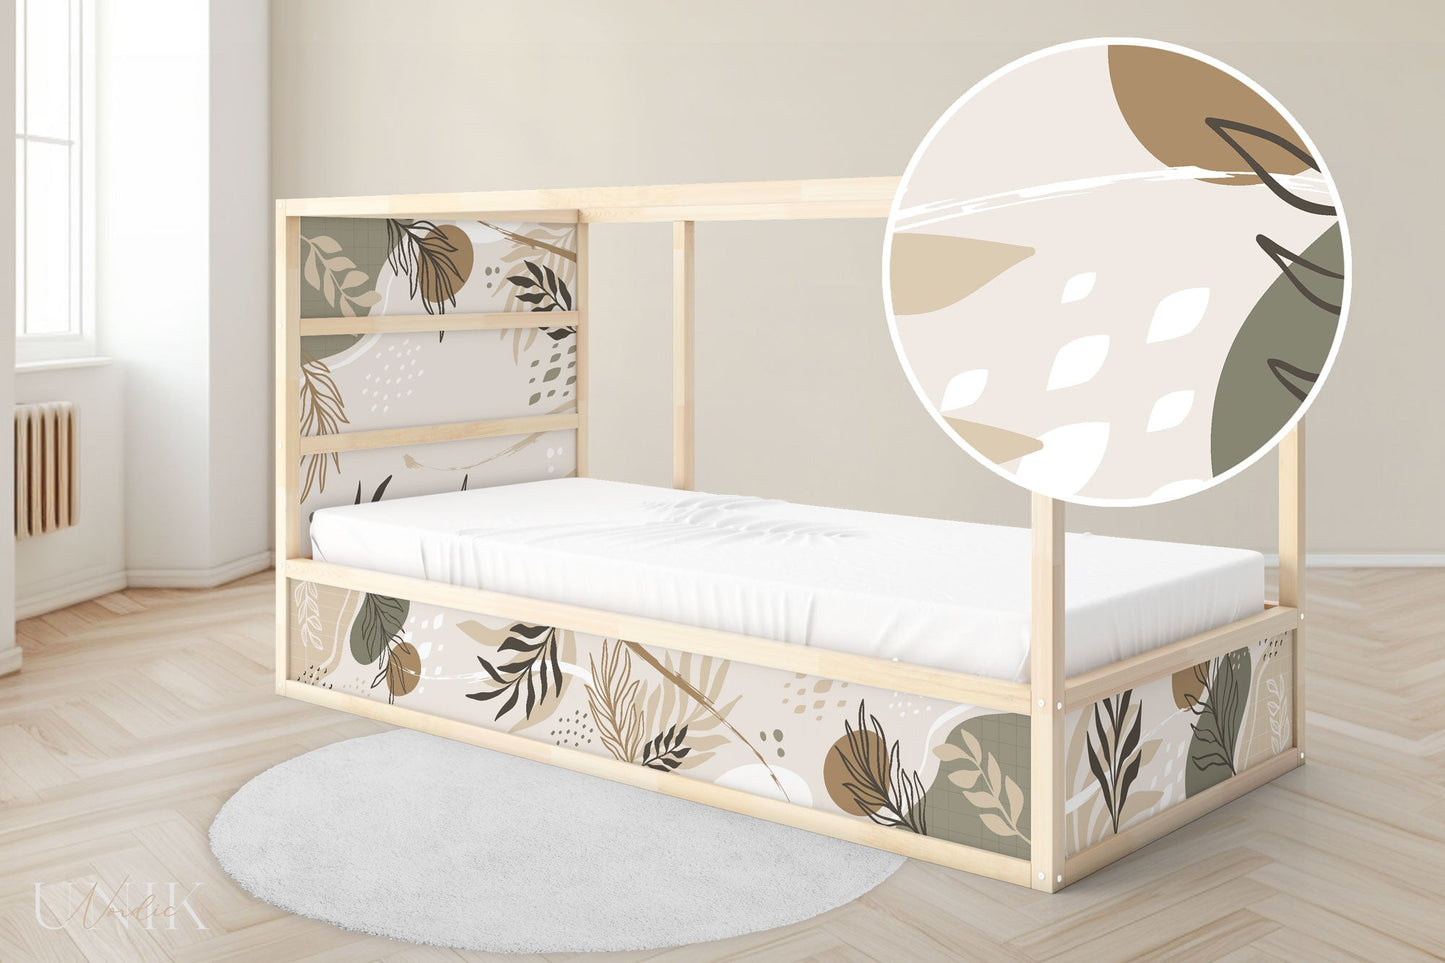 IKEA Kura Bed Sticker Set - Beige Shapes